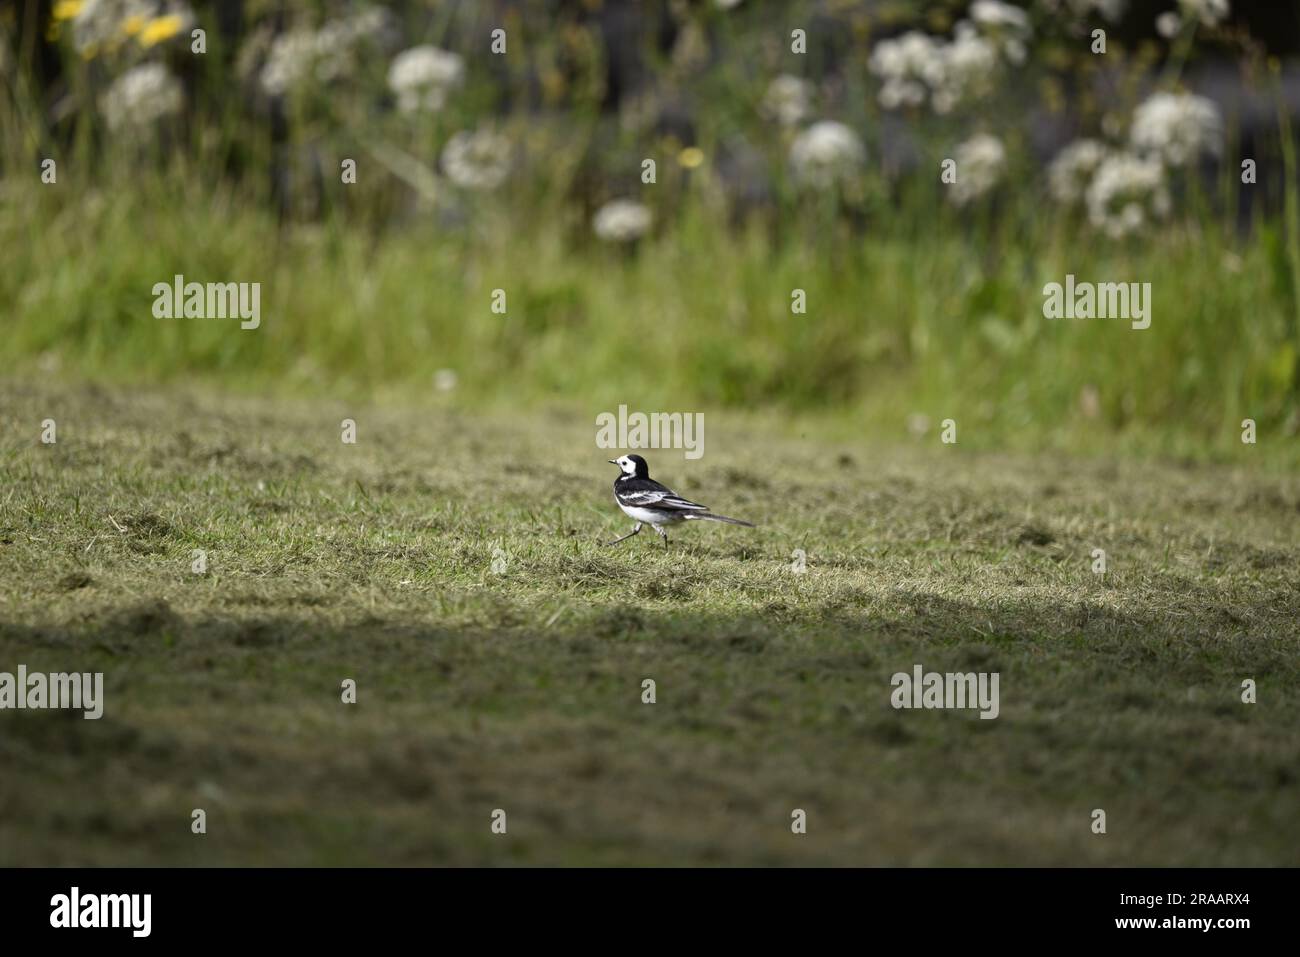 Pied Wagtail/White Wagtail (Motacilla alba) camminando da destra a sinistra con il piede sinistro in avanti, lungo il bordo erboso del fiume con sfondo di fiori selvatici, Regno Unito Foto Stock